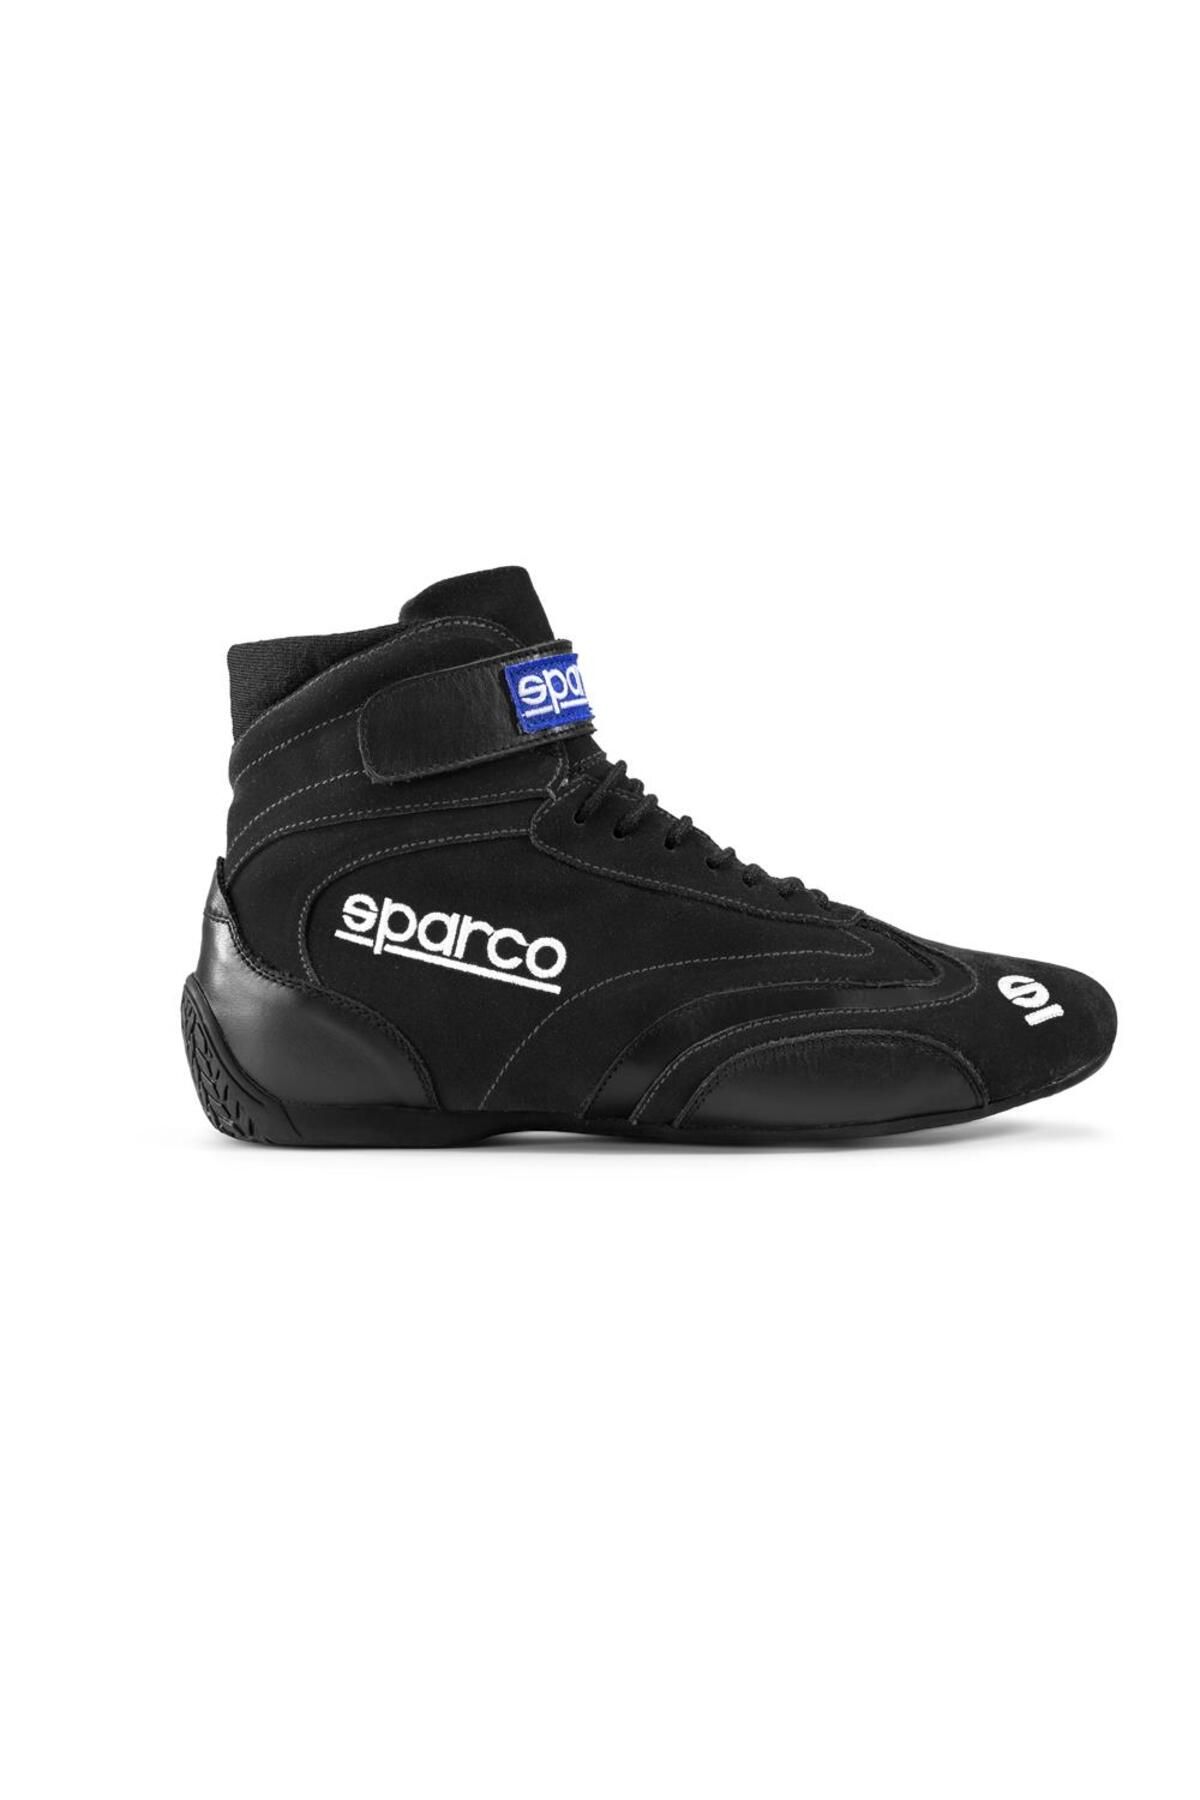 Sparco Top Yarış Ayakkabısı Fia Onaylı Siyah 44 Numara